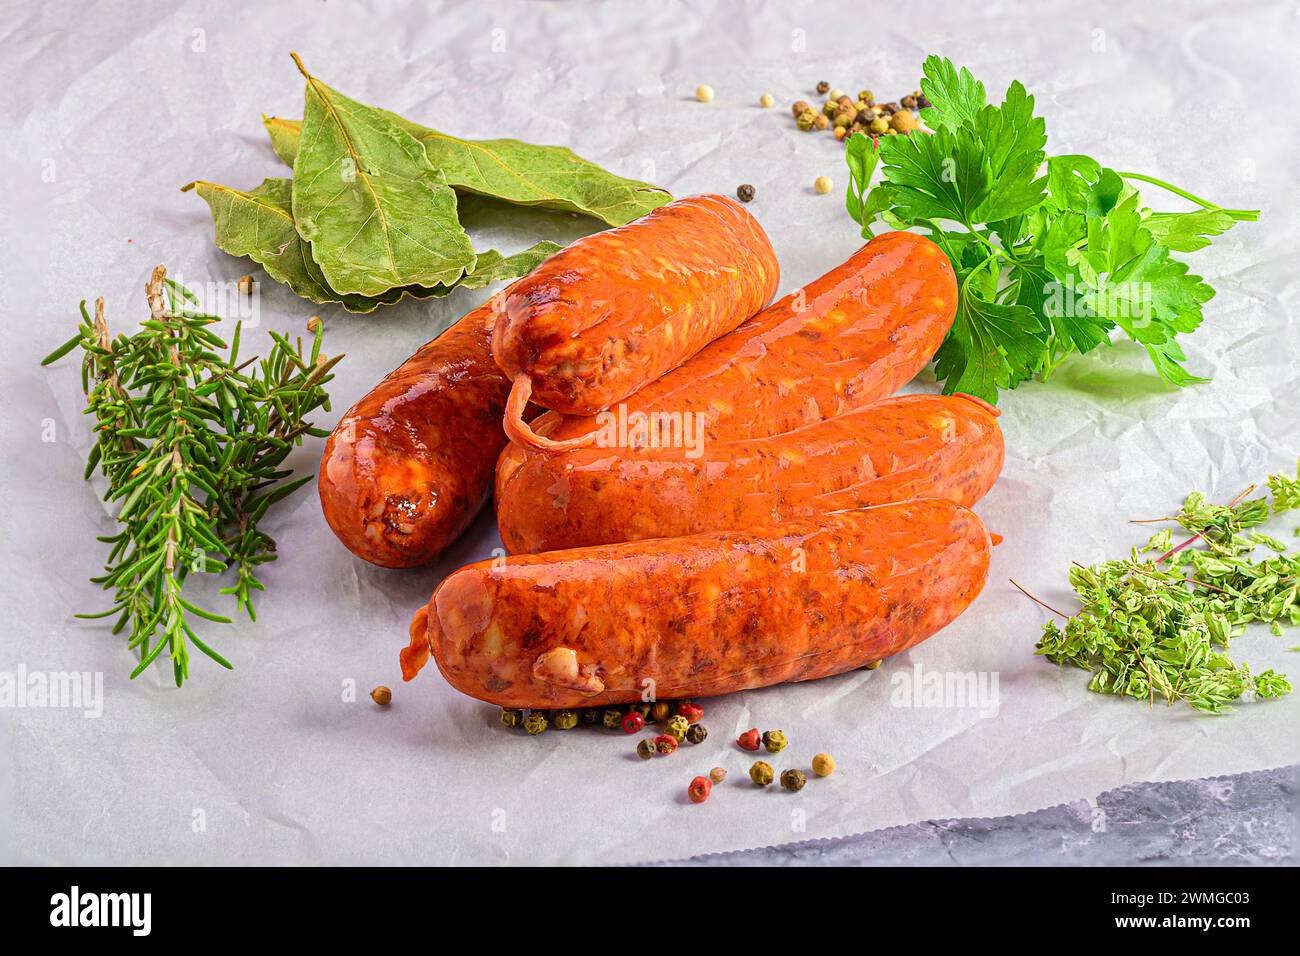 Le delizie rustiche: Salsicce fresche con erbe aromatiche Foto Stock